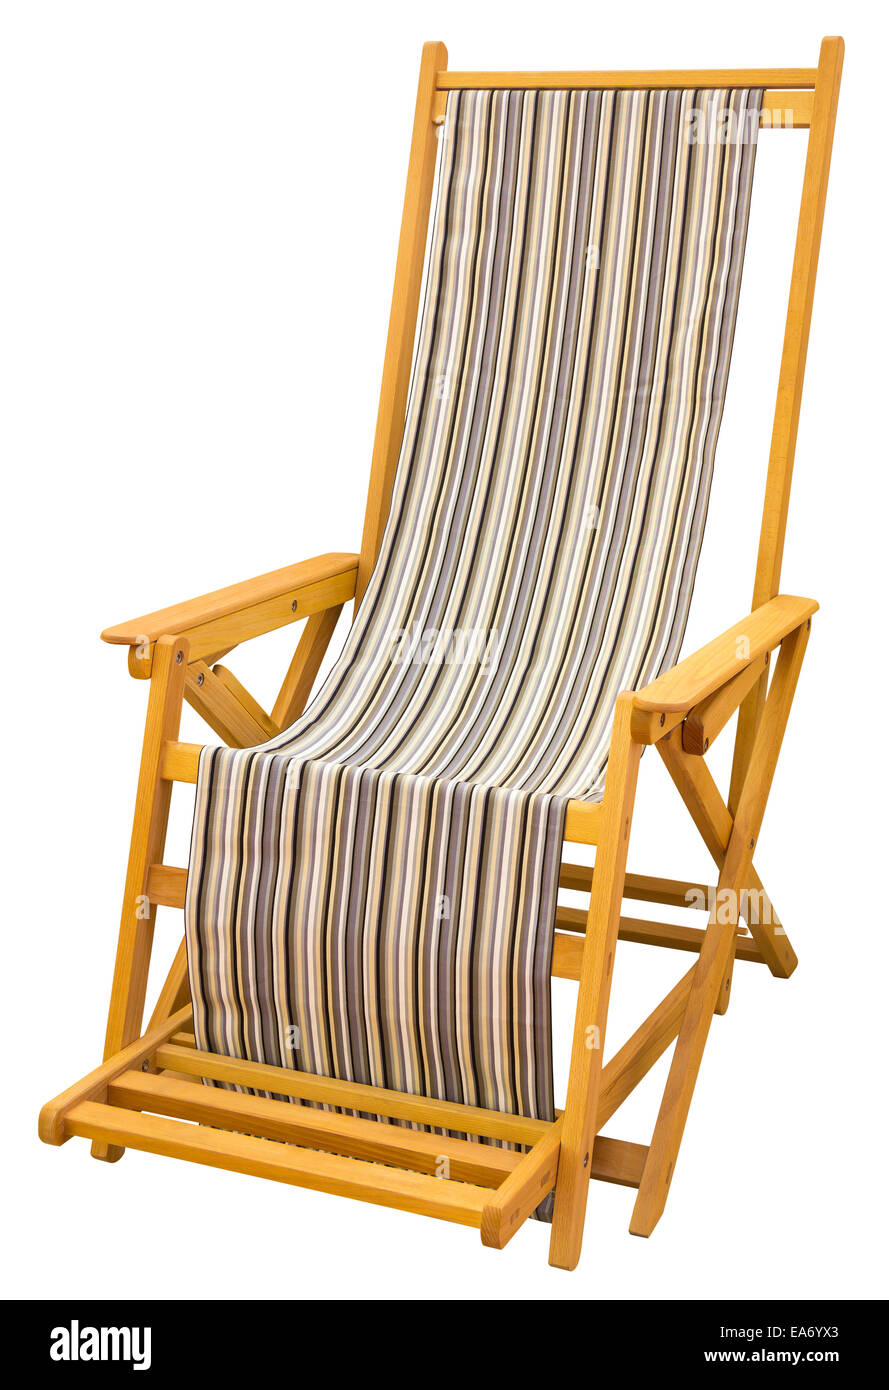 Hölzerne Liegestühle mit verschiedenen Farben Stoff isoliert mit Beschneidungspfad Stockfoto